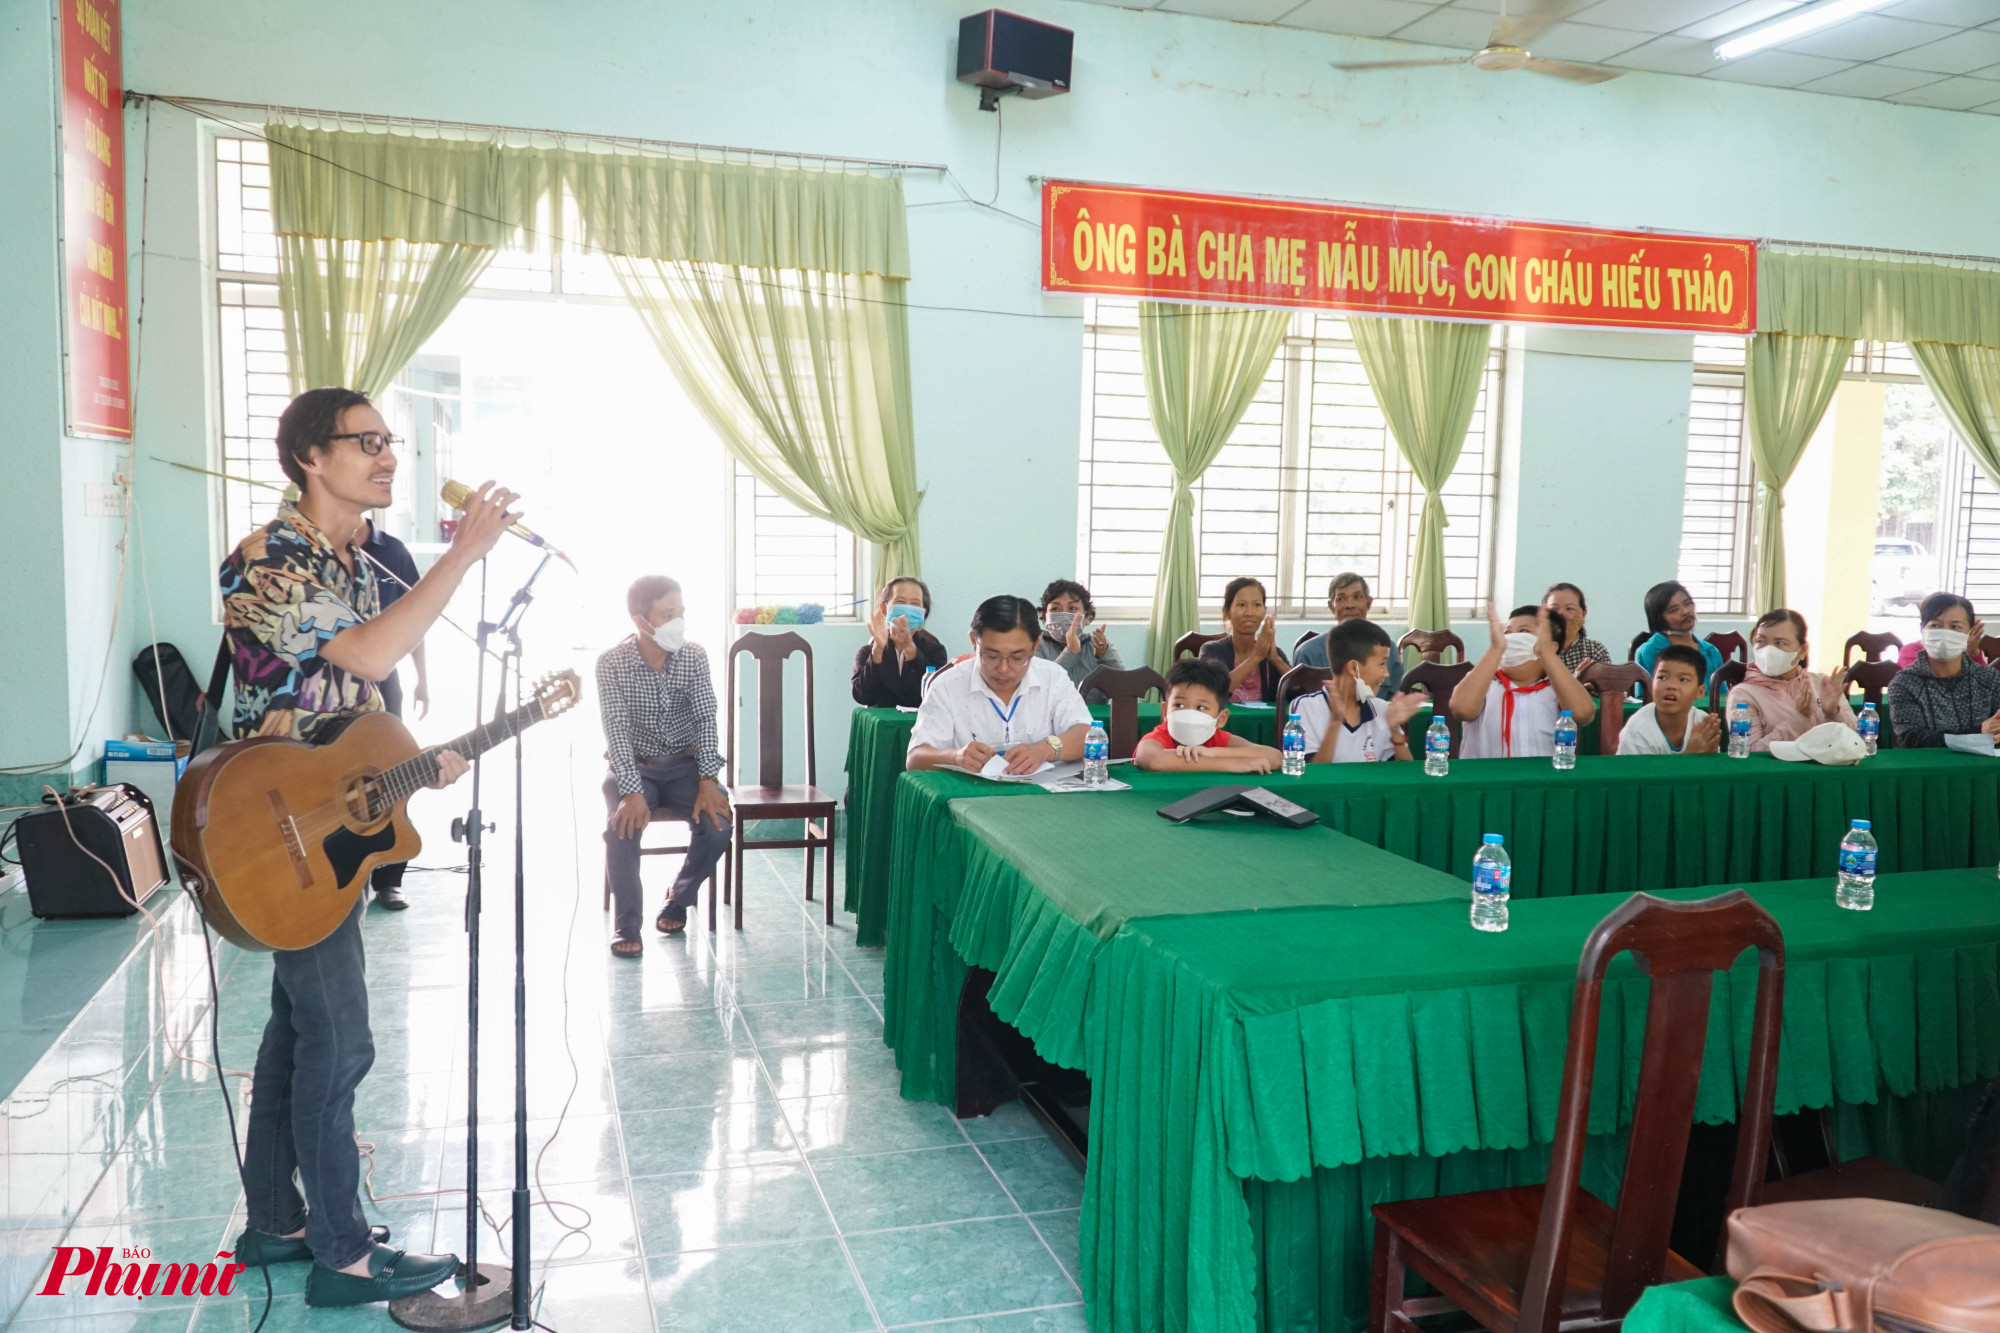 Nhóm thực hiện dự án “Âm nhạc cho trẻ thơ” đã phối hợp cùng UBND xã Long Sơn, huyện Cần Được, tỉnh Long An đã tổ chức chương trình âm nhạc cho trẻ thơ với quà tặng là đàn Ukulele cho các em, nhân dịp Trung thu cận kề.